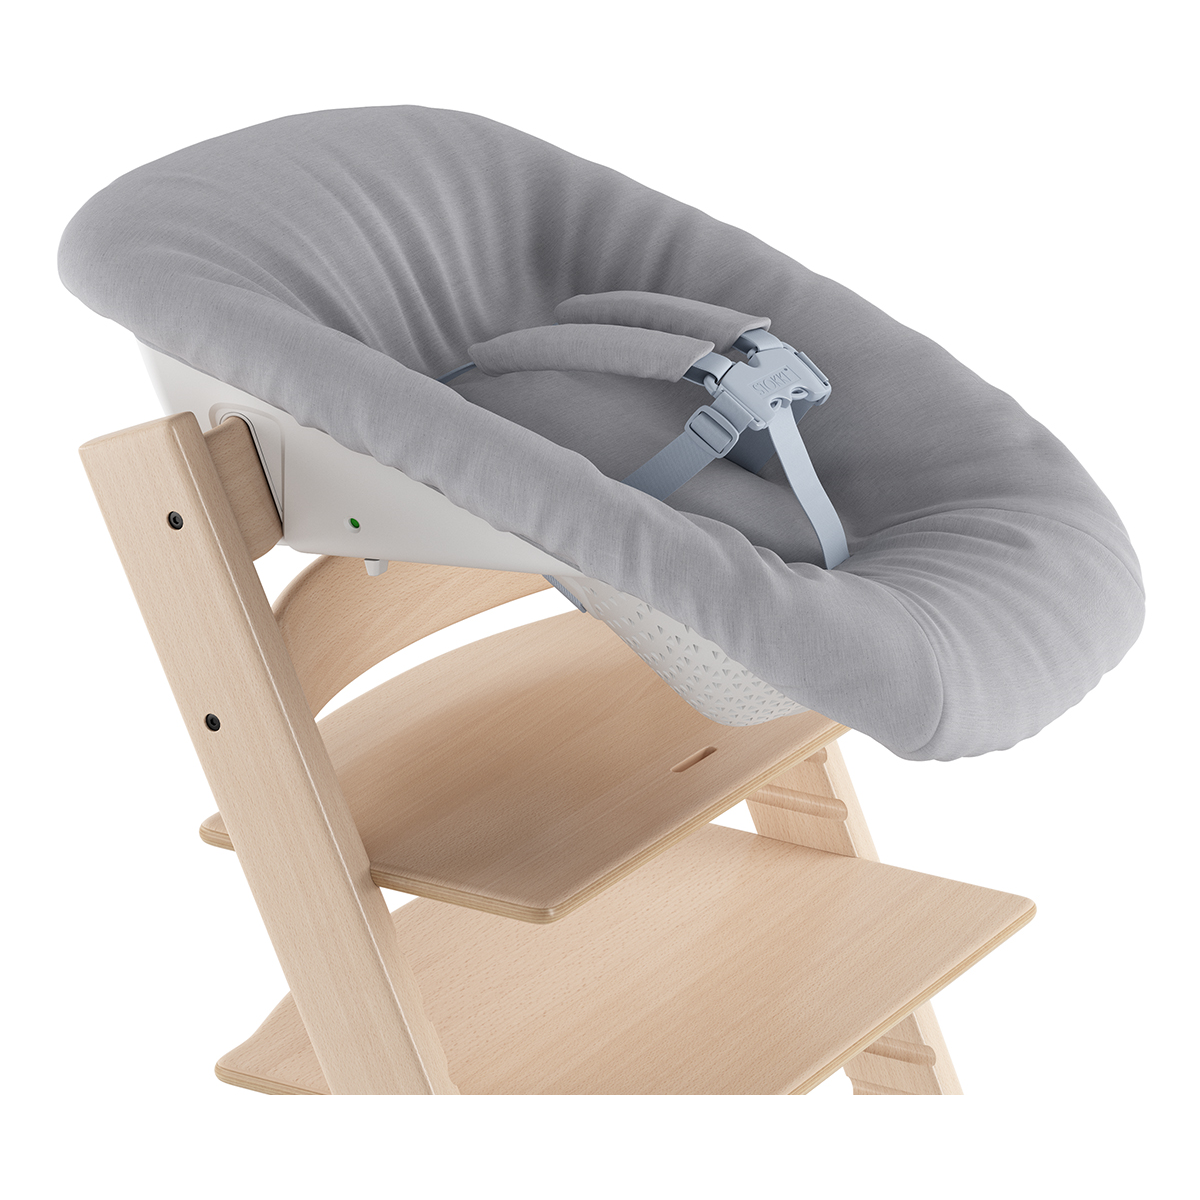 Крісло для новонароджених Stokke Tripp Trapp Newborn (526101) - фото 1